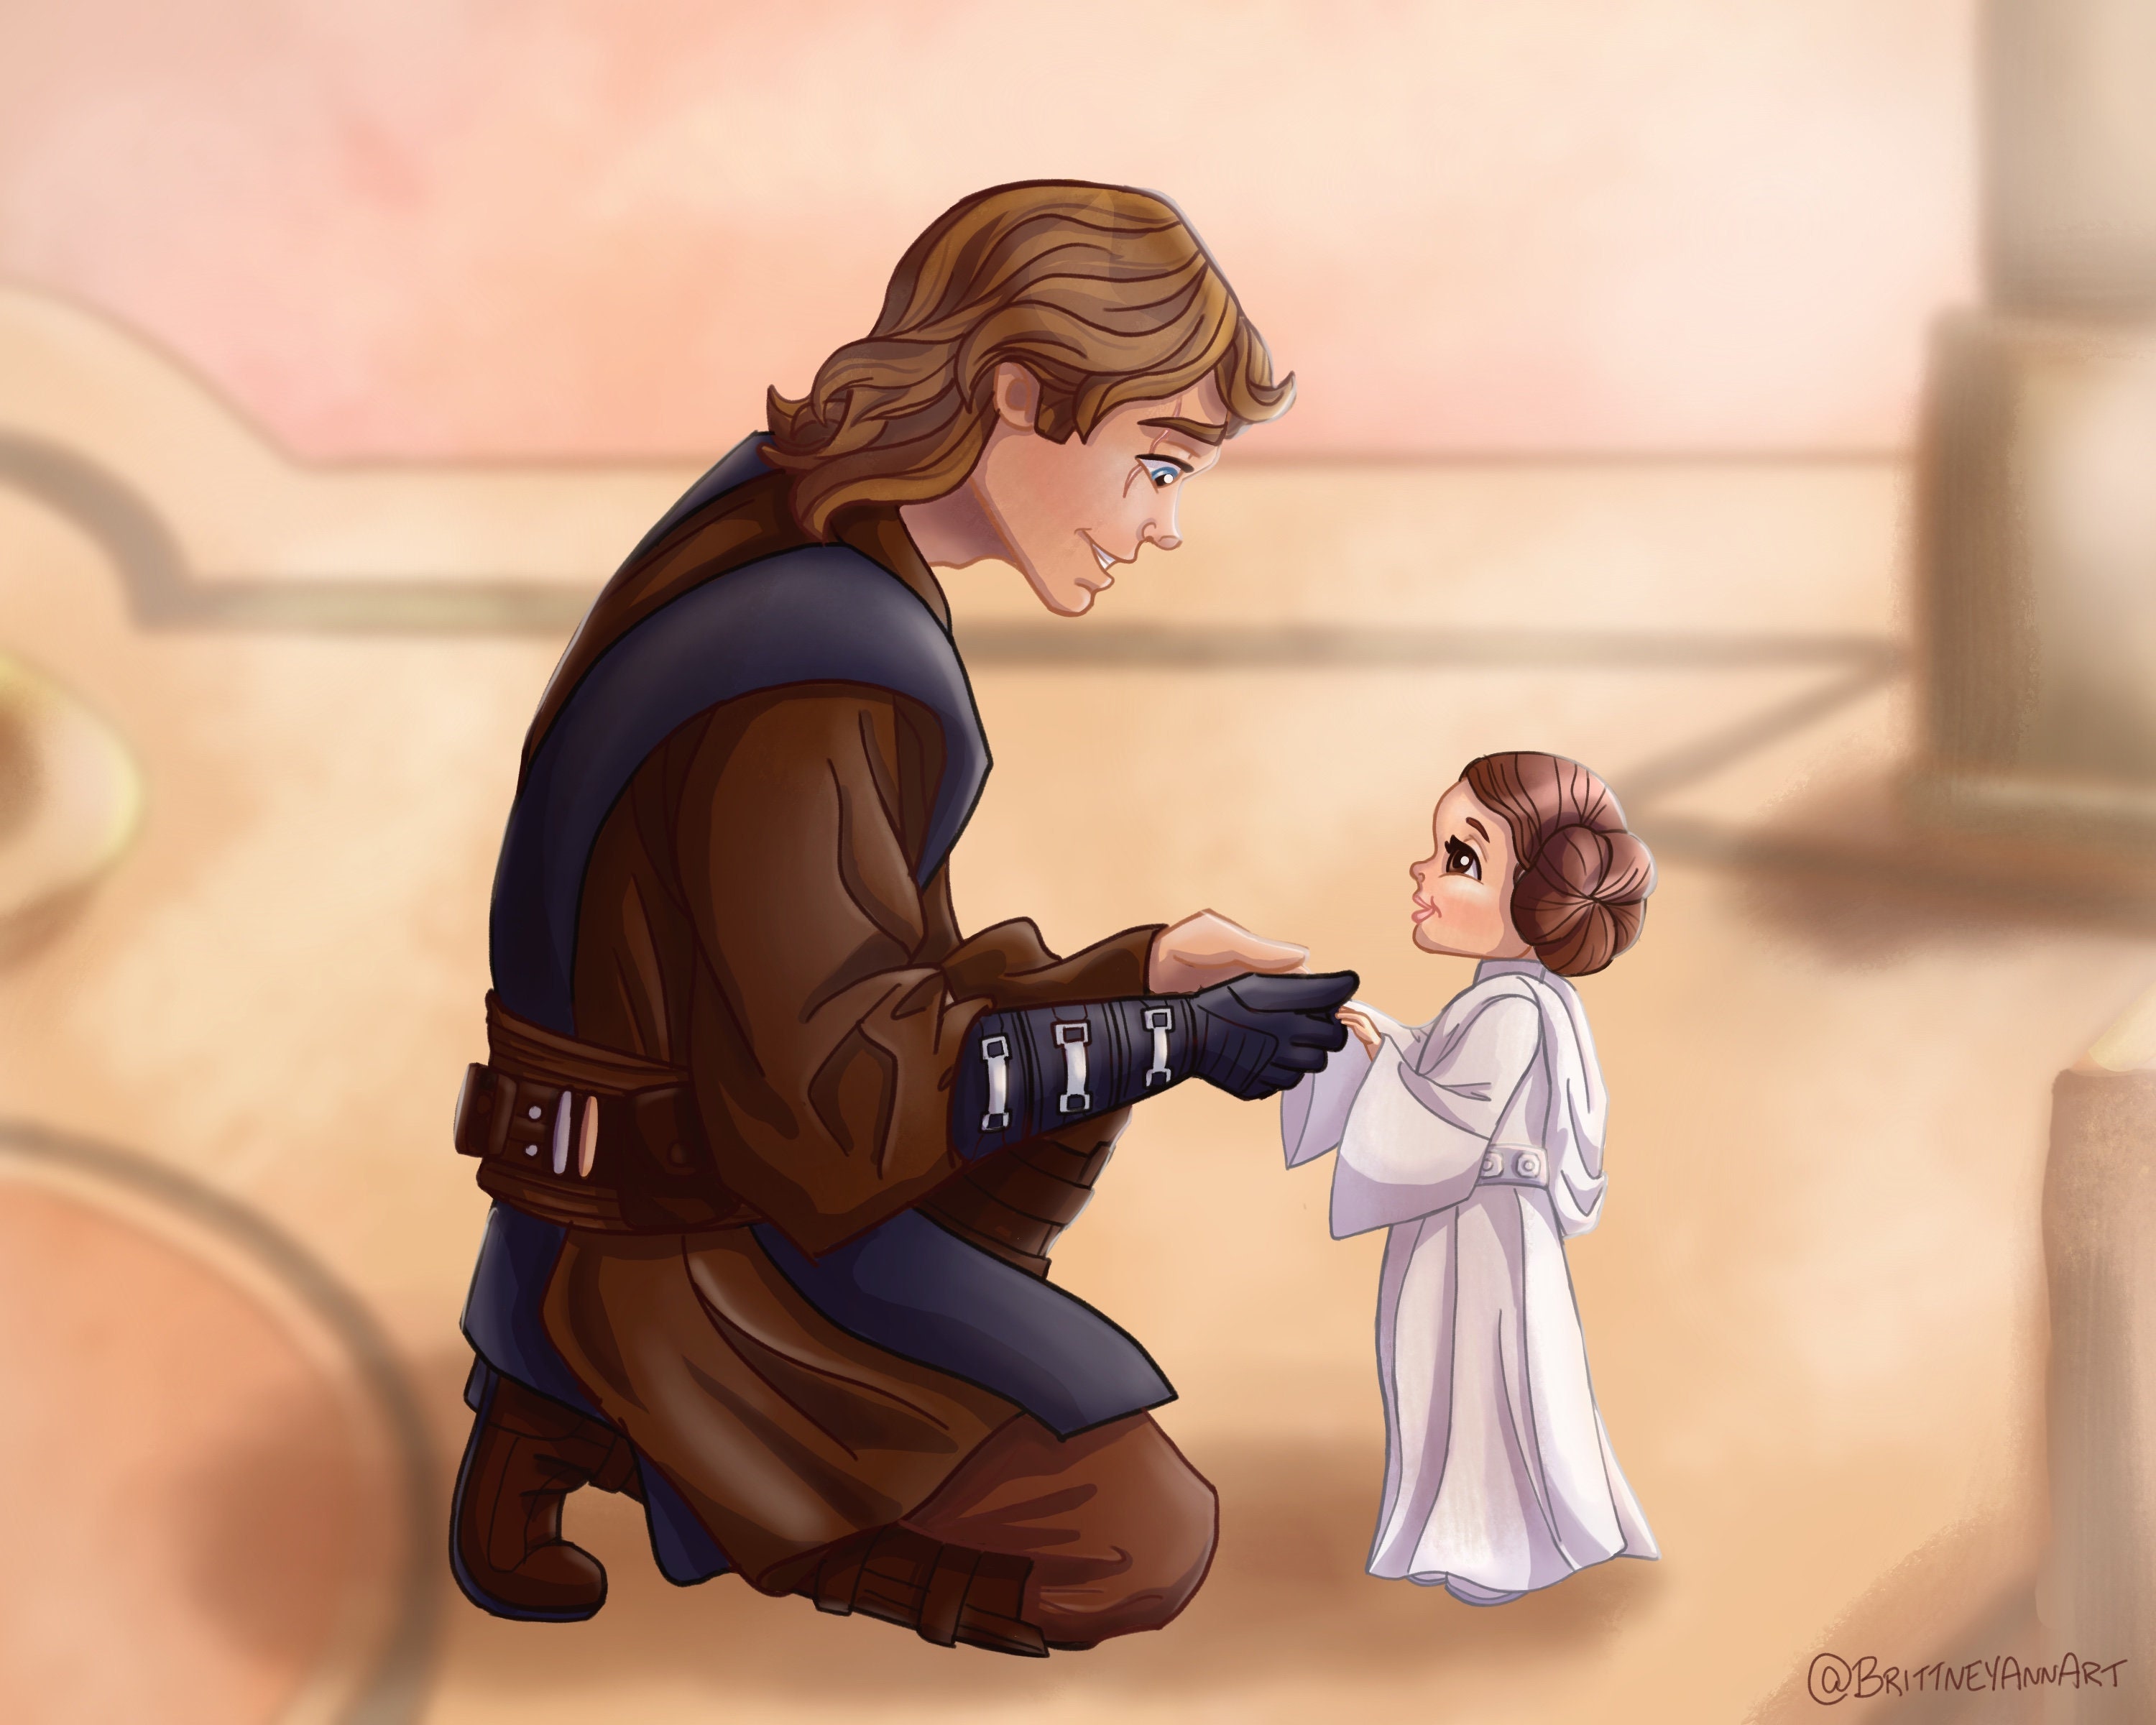 winkel Democratie Onbevredigend Star Wars Baby Princess Leia Anakin Skywalker Digital Painting - Etsy